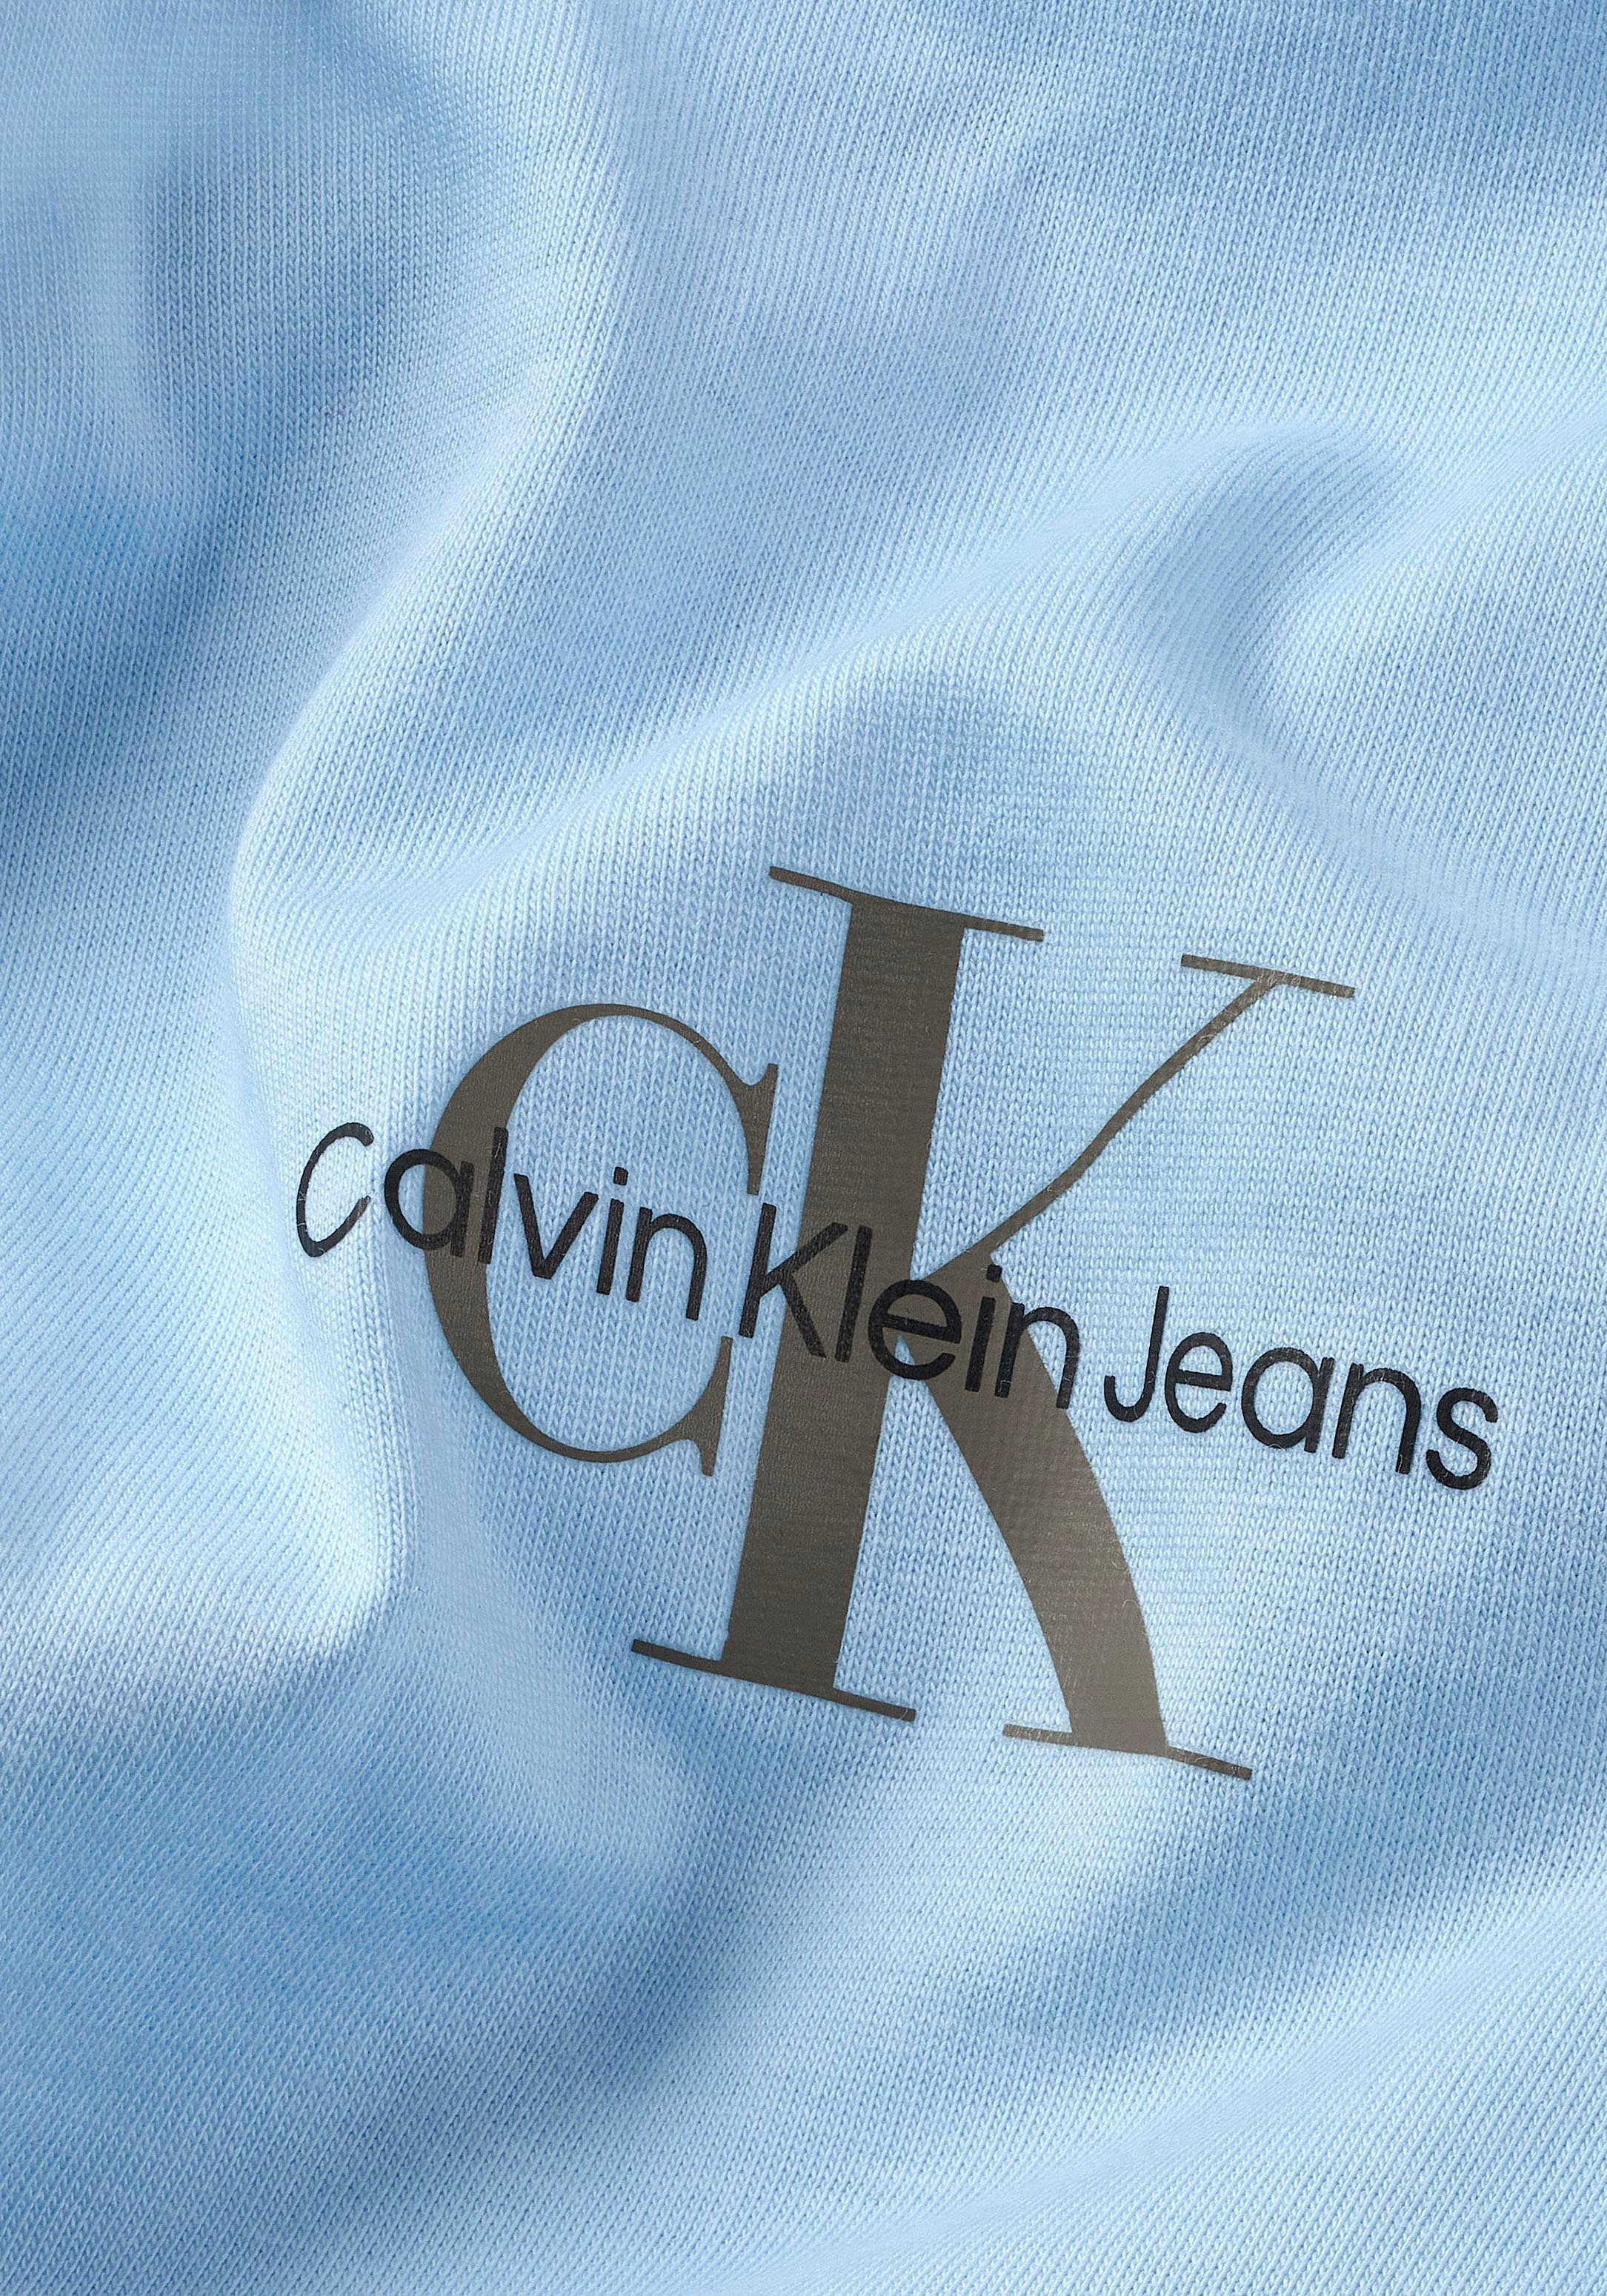 Rundhalsausschnitt Calvin mit Klein hellblau Jeans T-Shirt